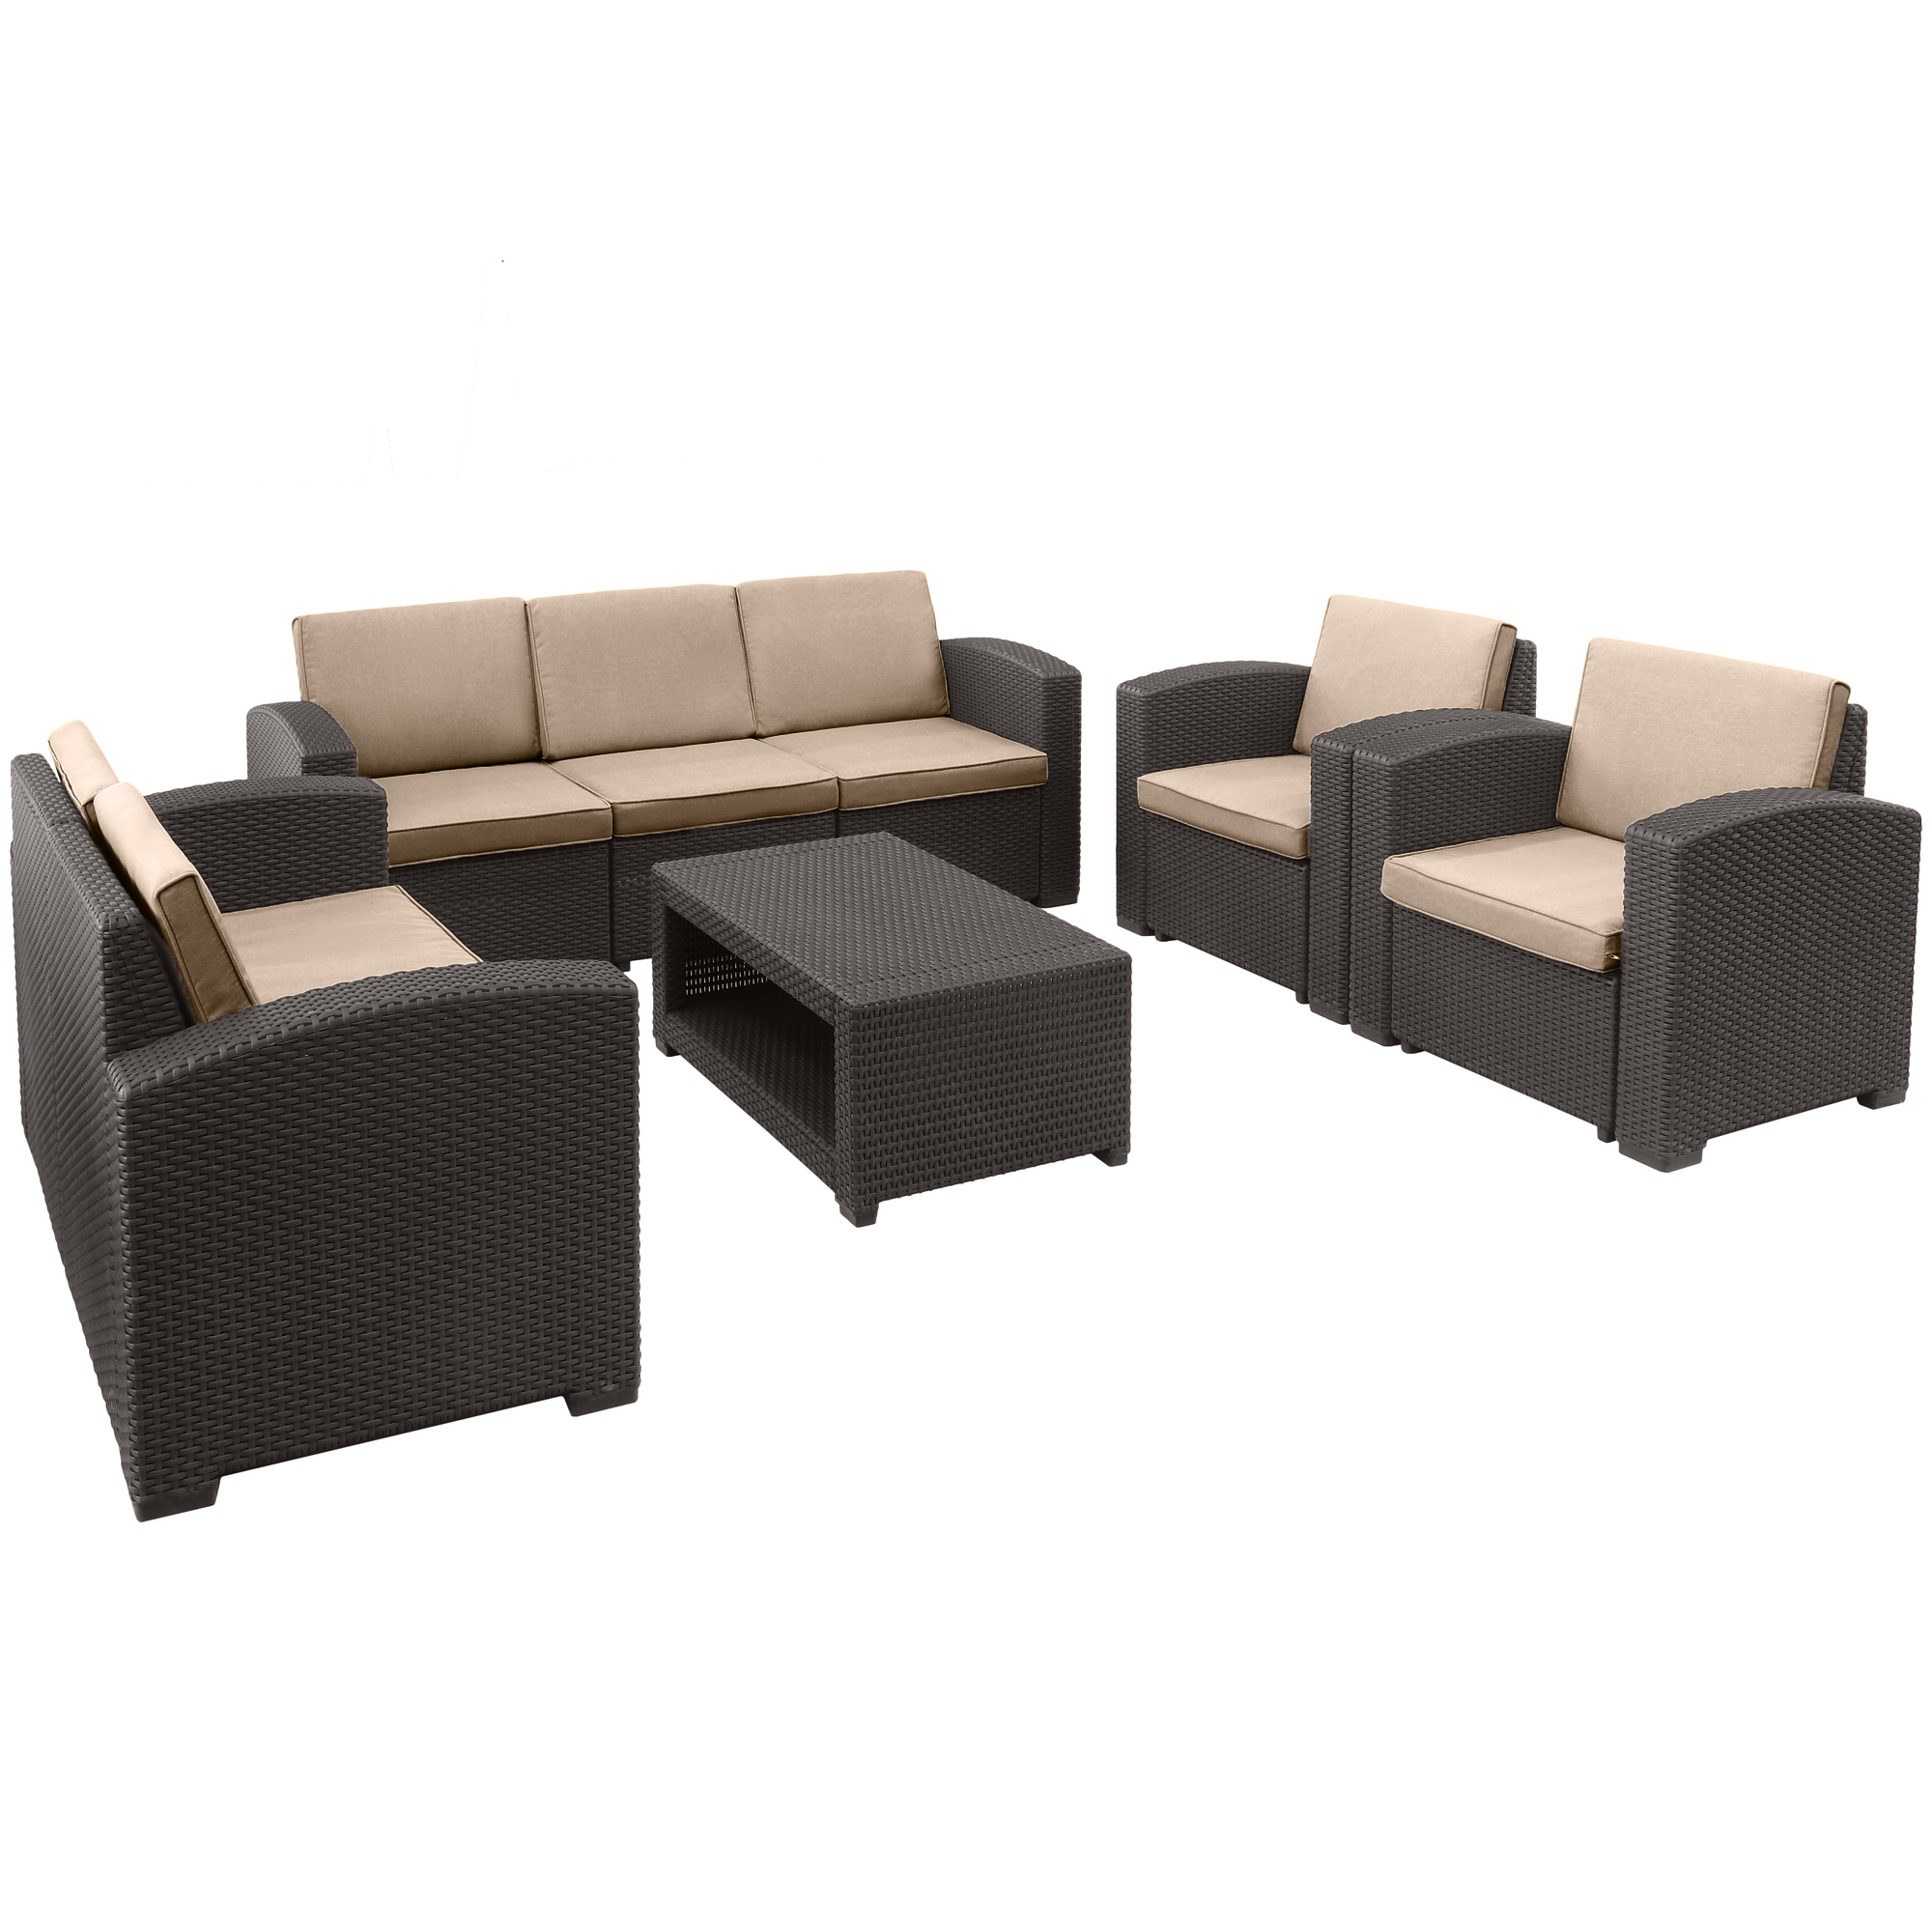 Комплект мебели LF 5 предметов, цвет коричневый, размер 199x75x71см 141x75x71 см - фото 1